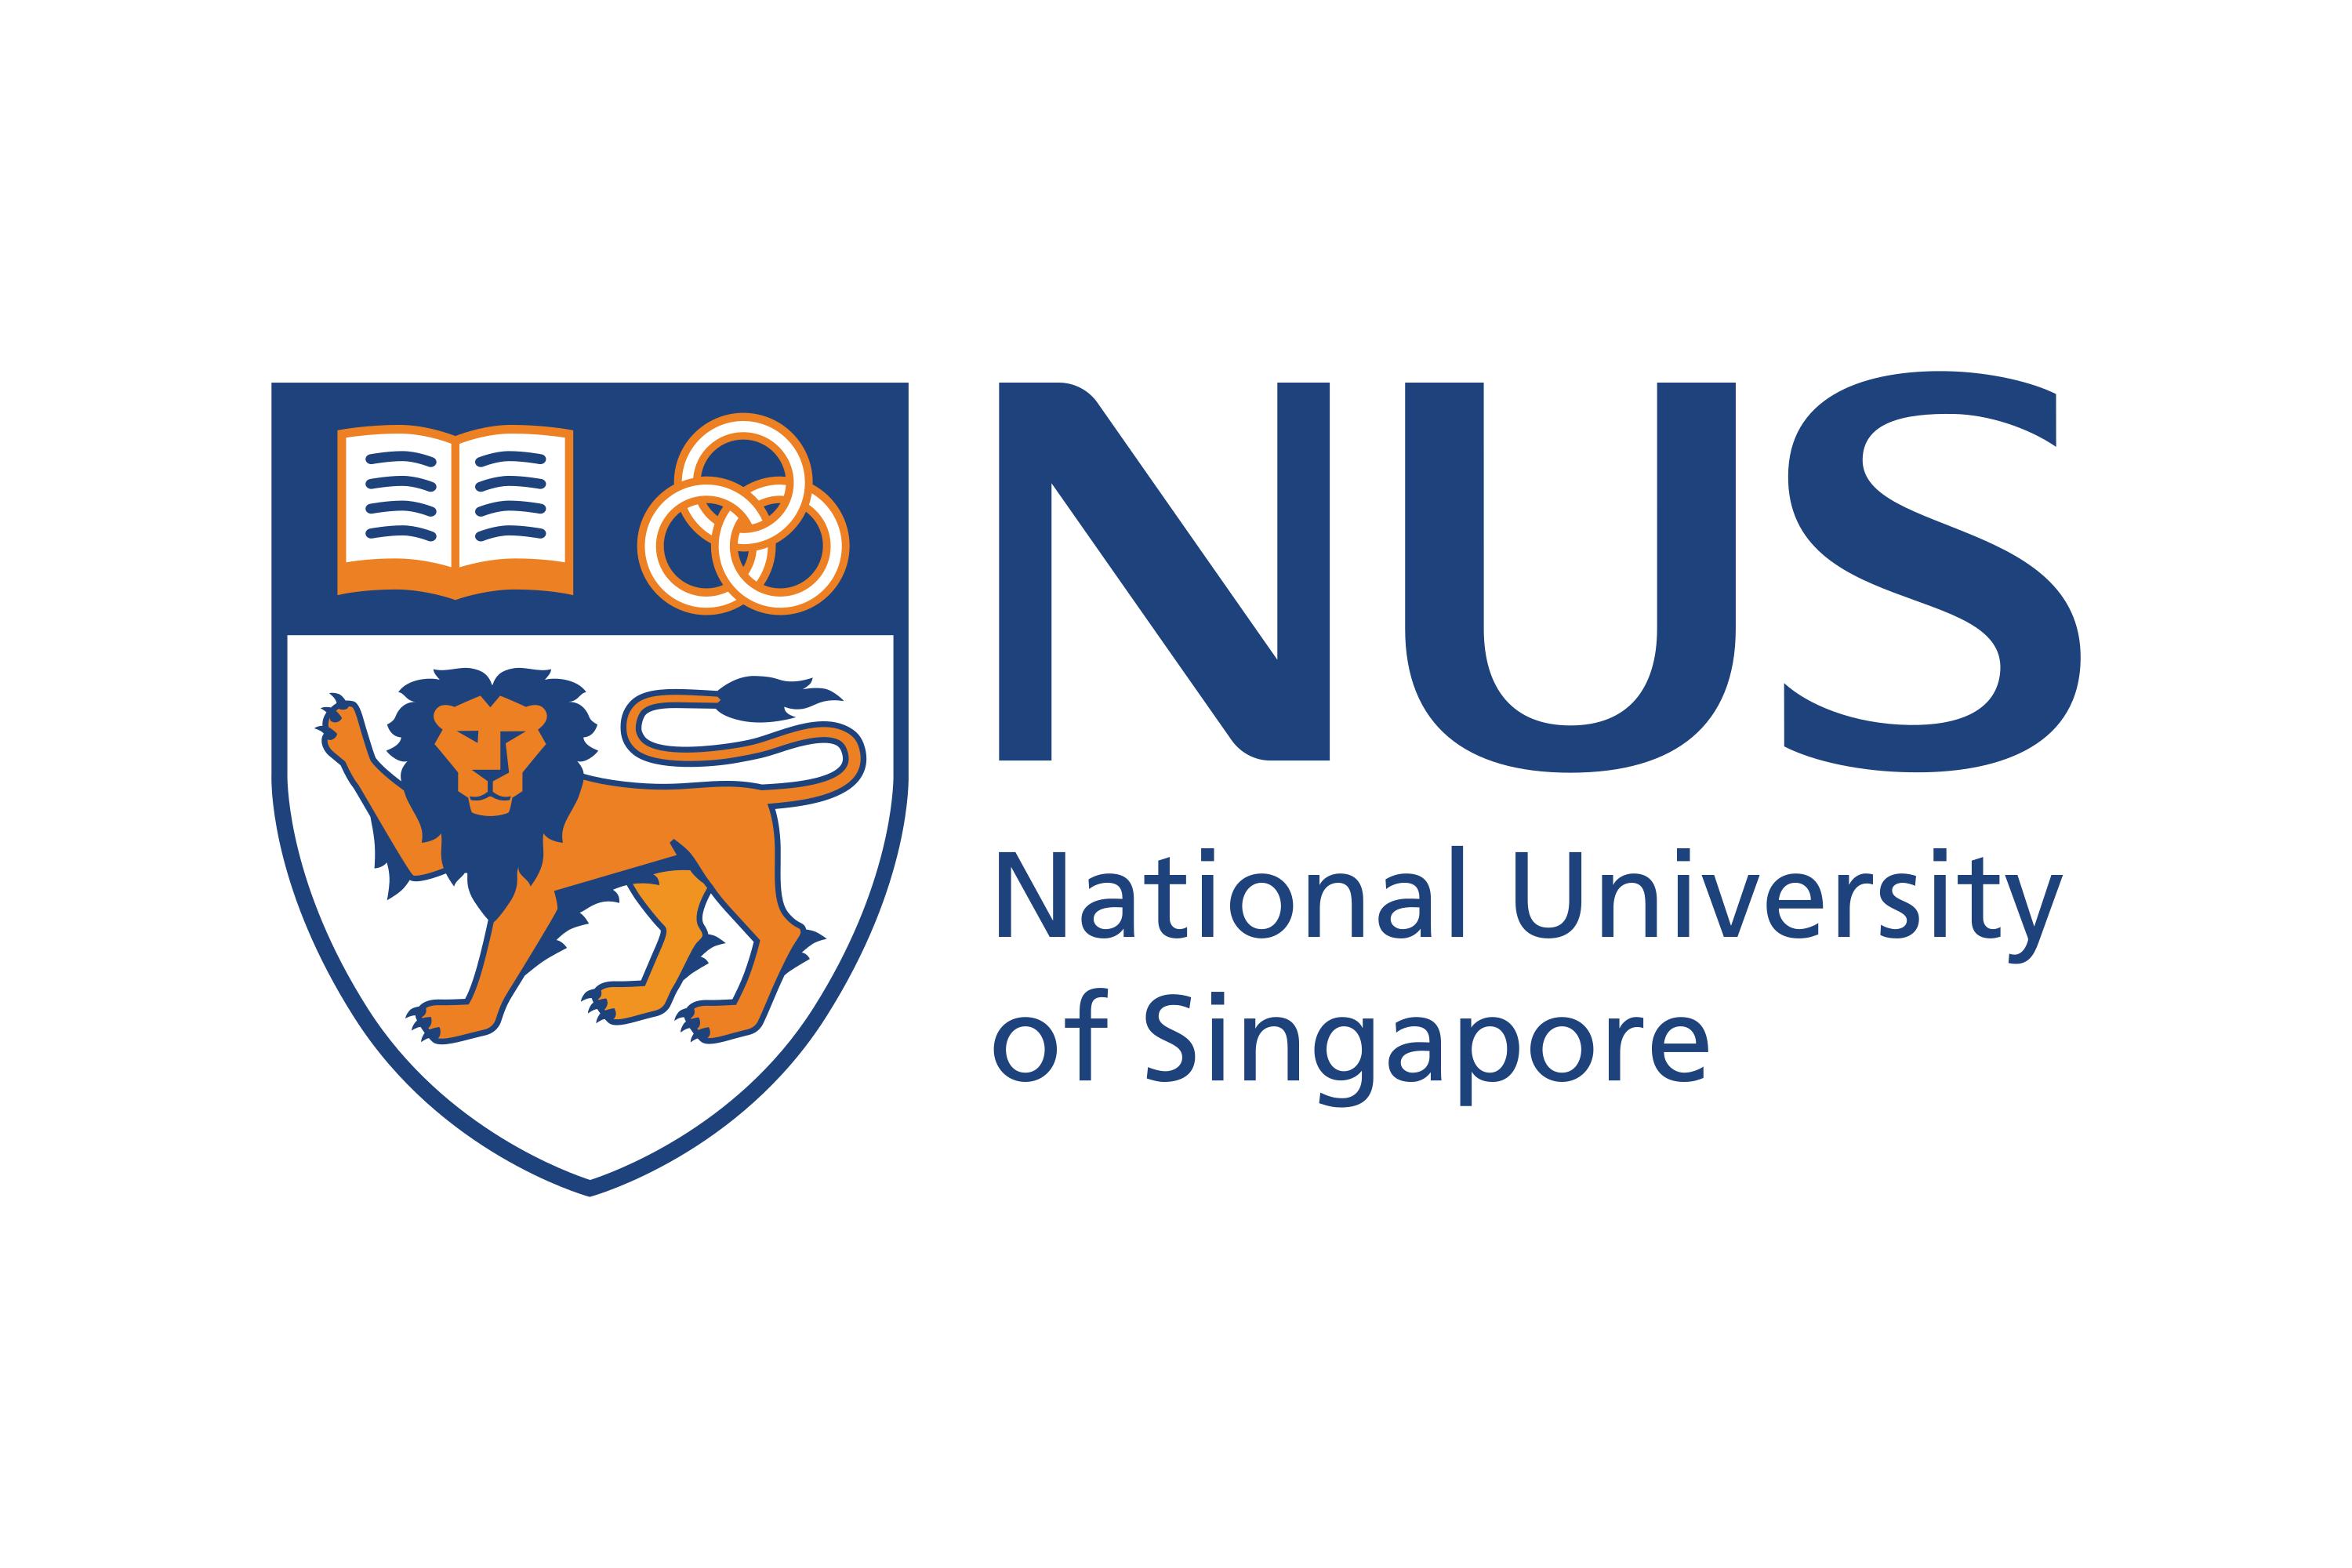 نیشنل یونیورسٹی آف سنگاپور (NUS) کا لوگو SVG ویکٹر میں ڈاؤن لوڈ کریں یا...